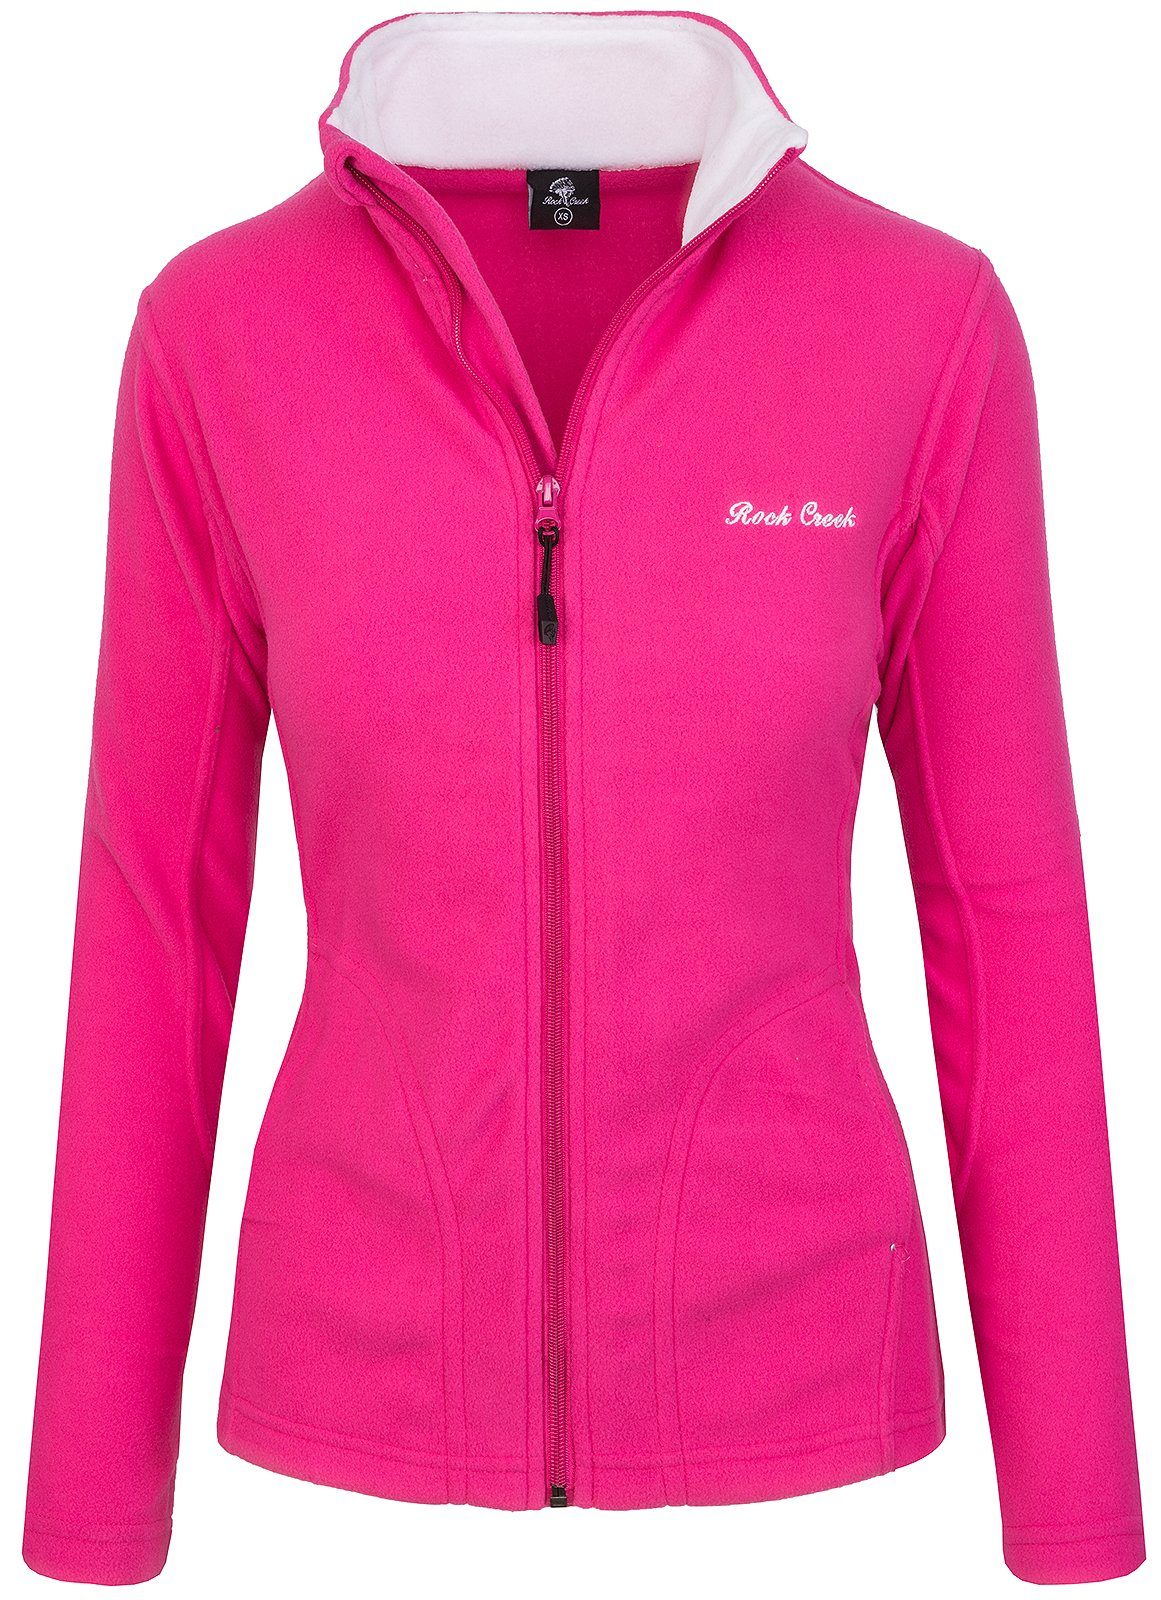 Rosa Übergangsjacken für Damen kaufen » Pinke Übergangsjacken | Übergangsjacken